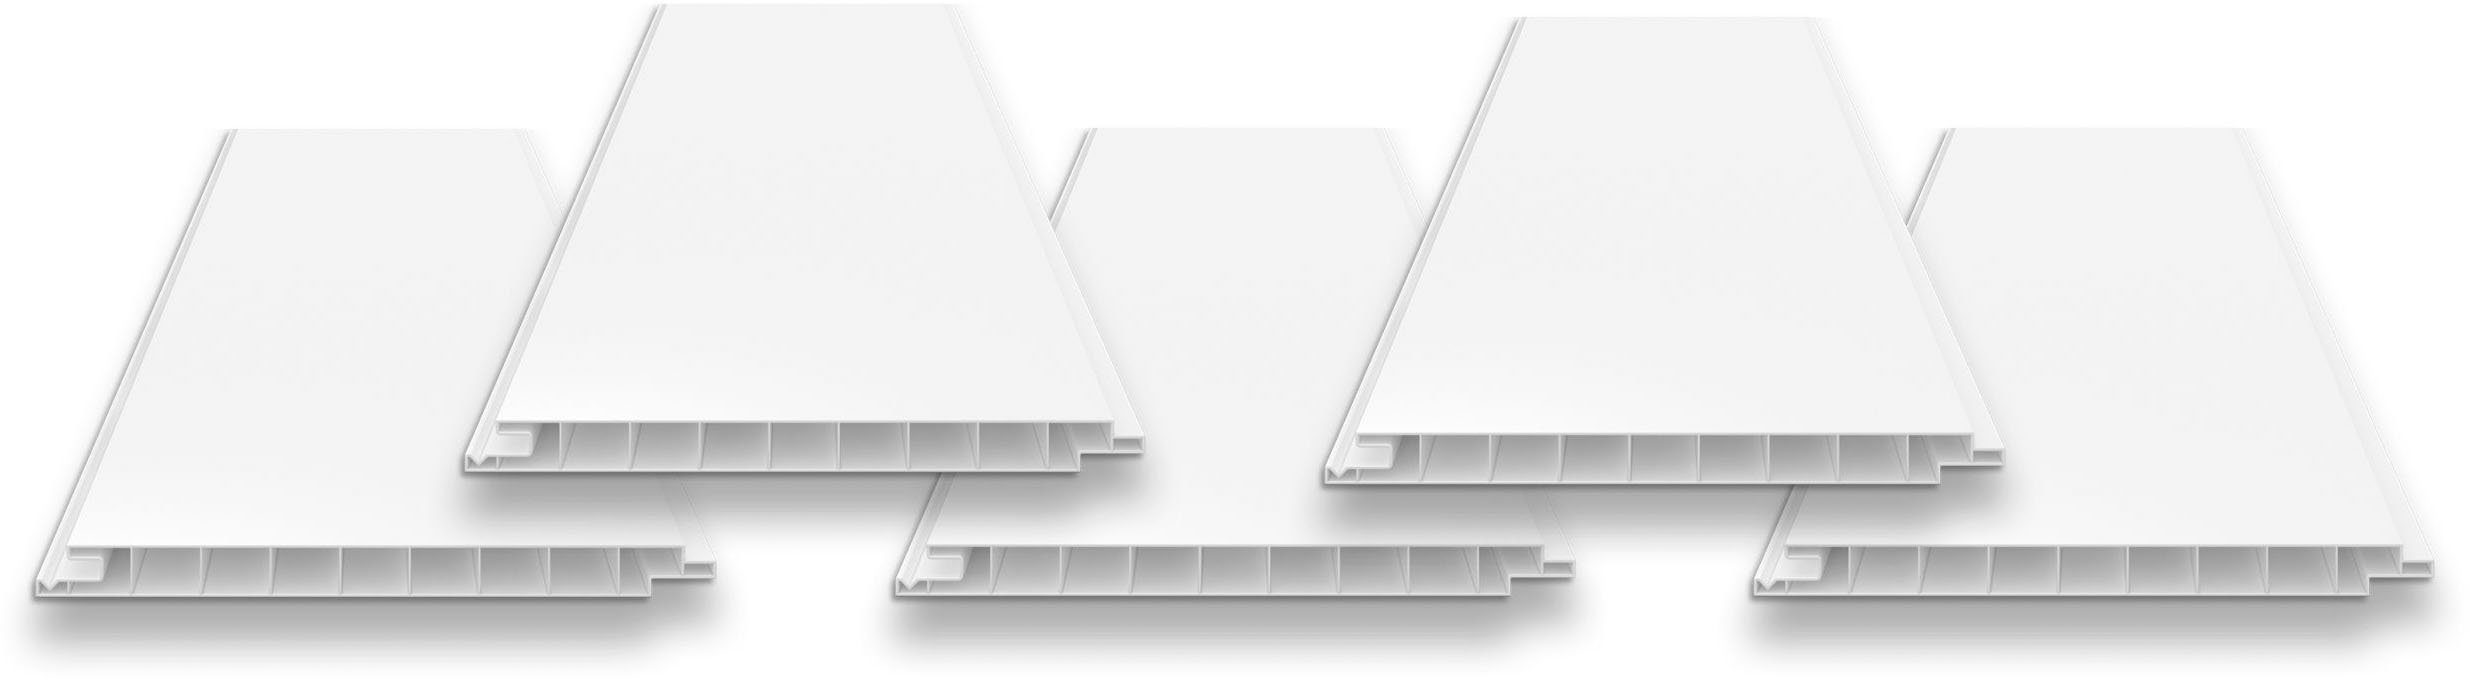 Tetzner & Jentzsch Verkleidungspaneel VP 200 weiß, PVC-Hohlkammerprofil, BxL: 20x600 cm, (Spar-Set, 5-tlg., 6 m) beidseitig glatt, ohne V-Fuge, ideal für homogene Flächen | Wandpaneele